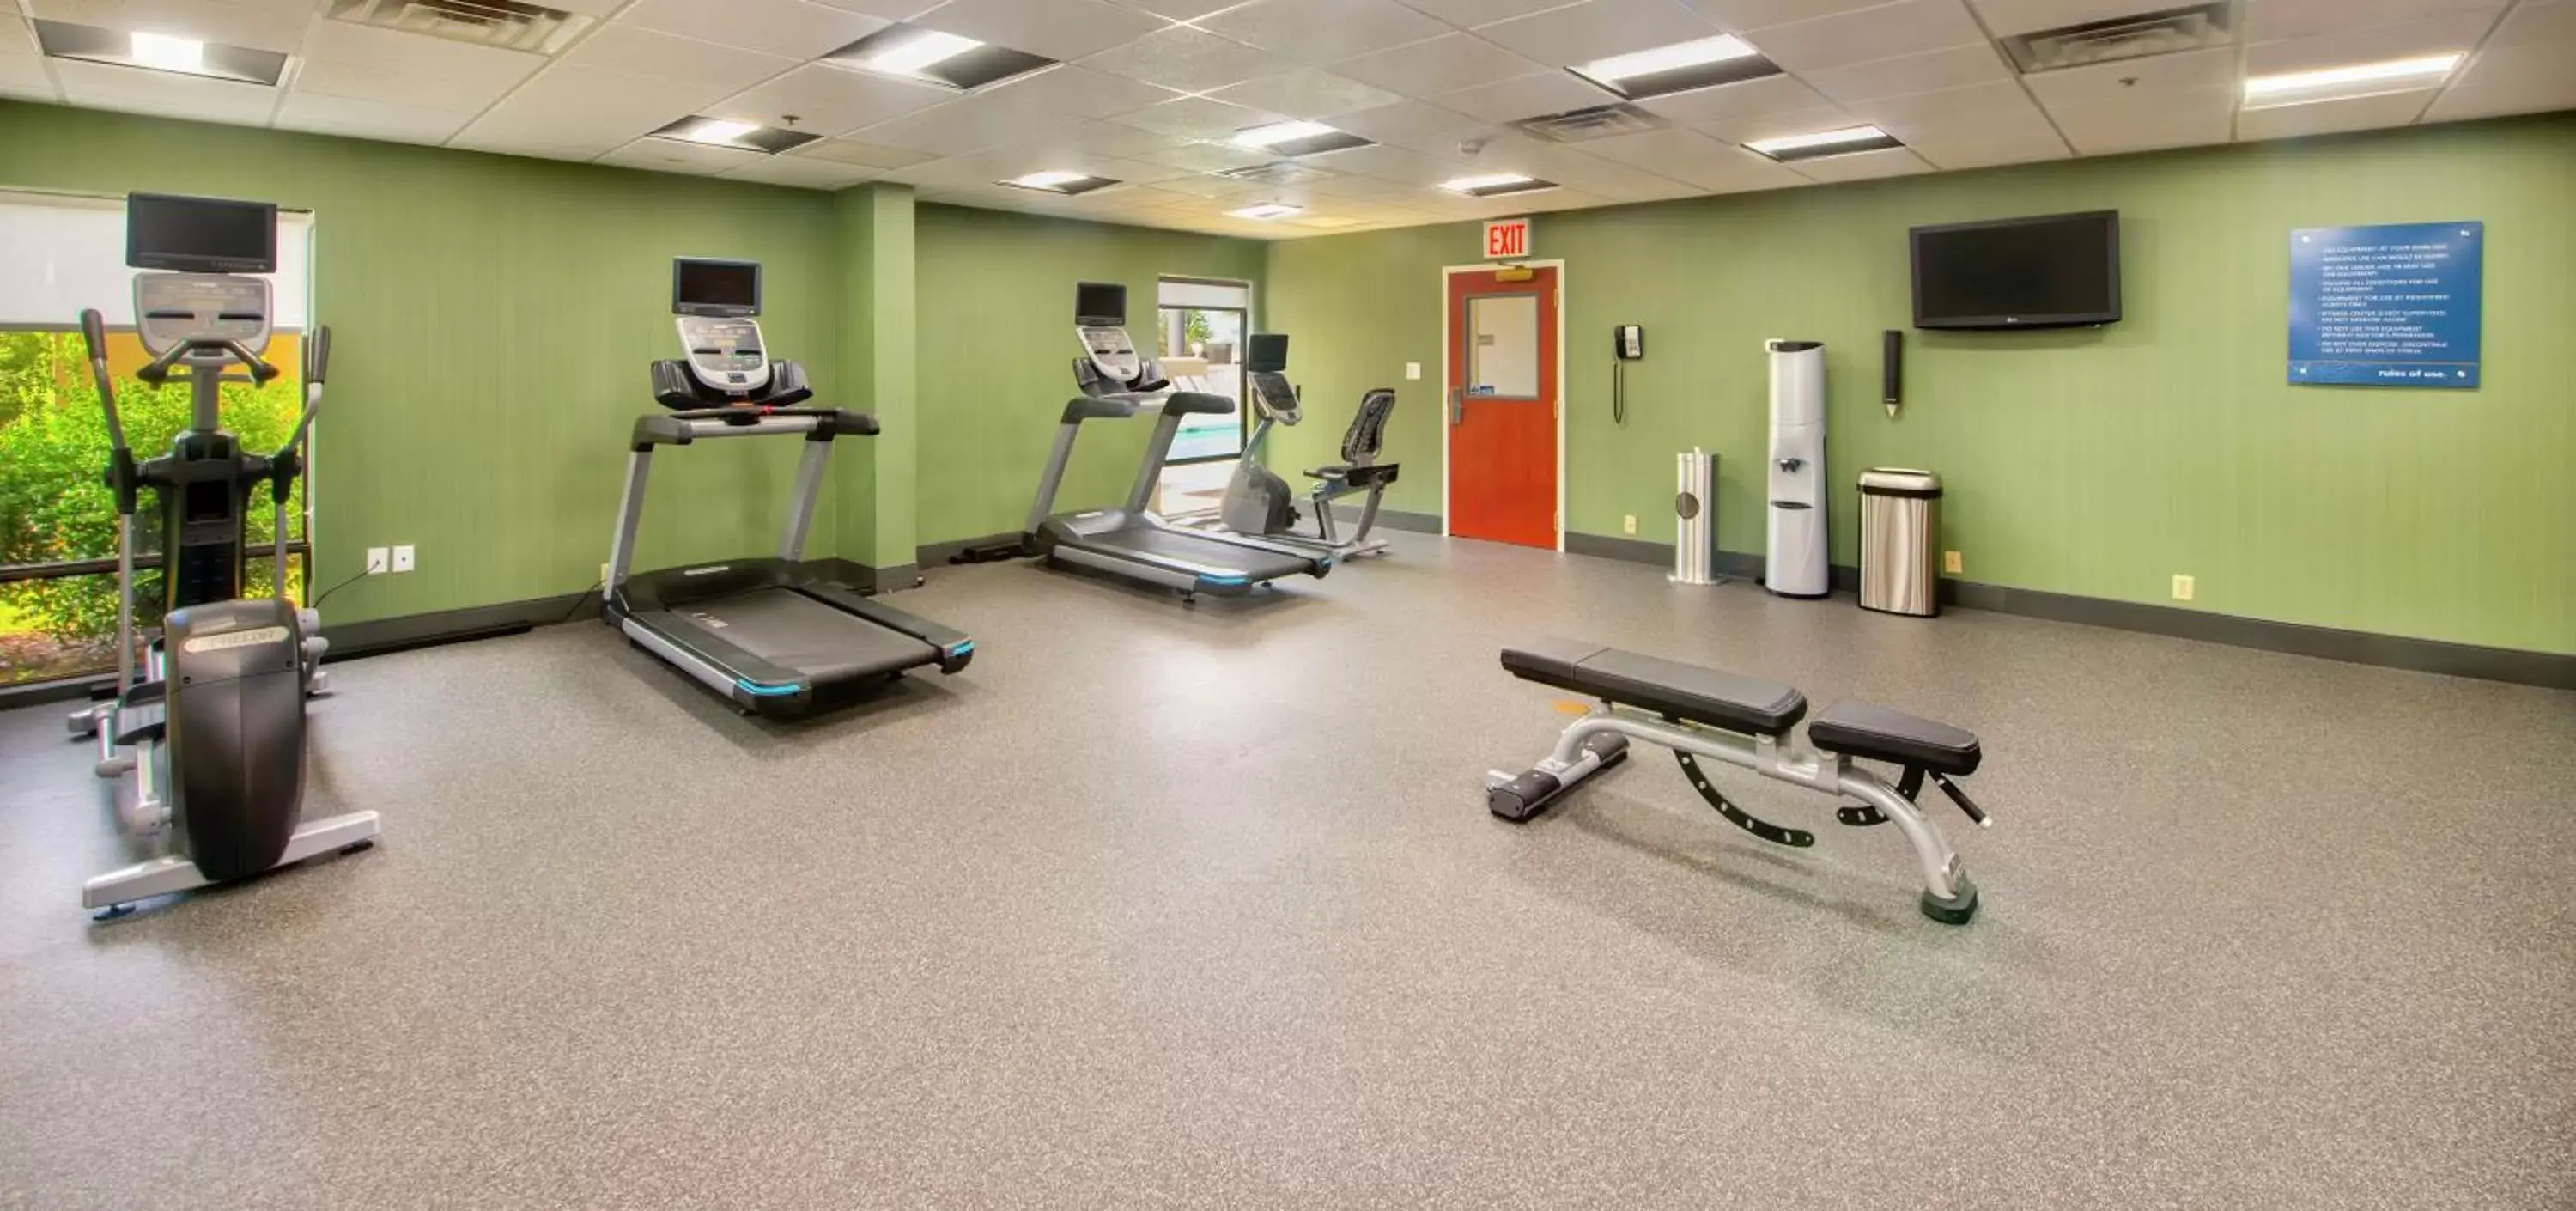 Fitness centre/facilities, Fitness Center/Facilities in Hampton Inn Gaffney